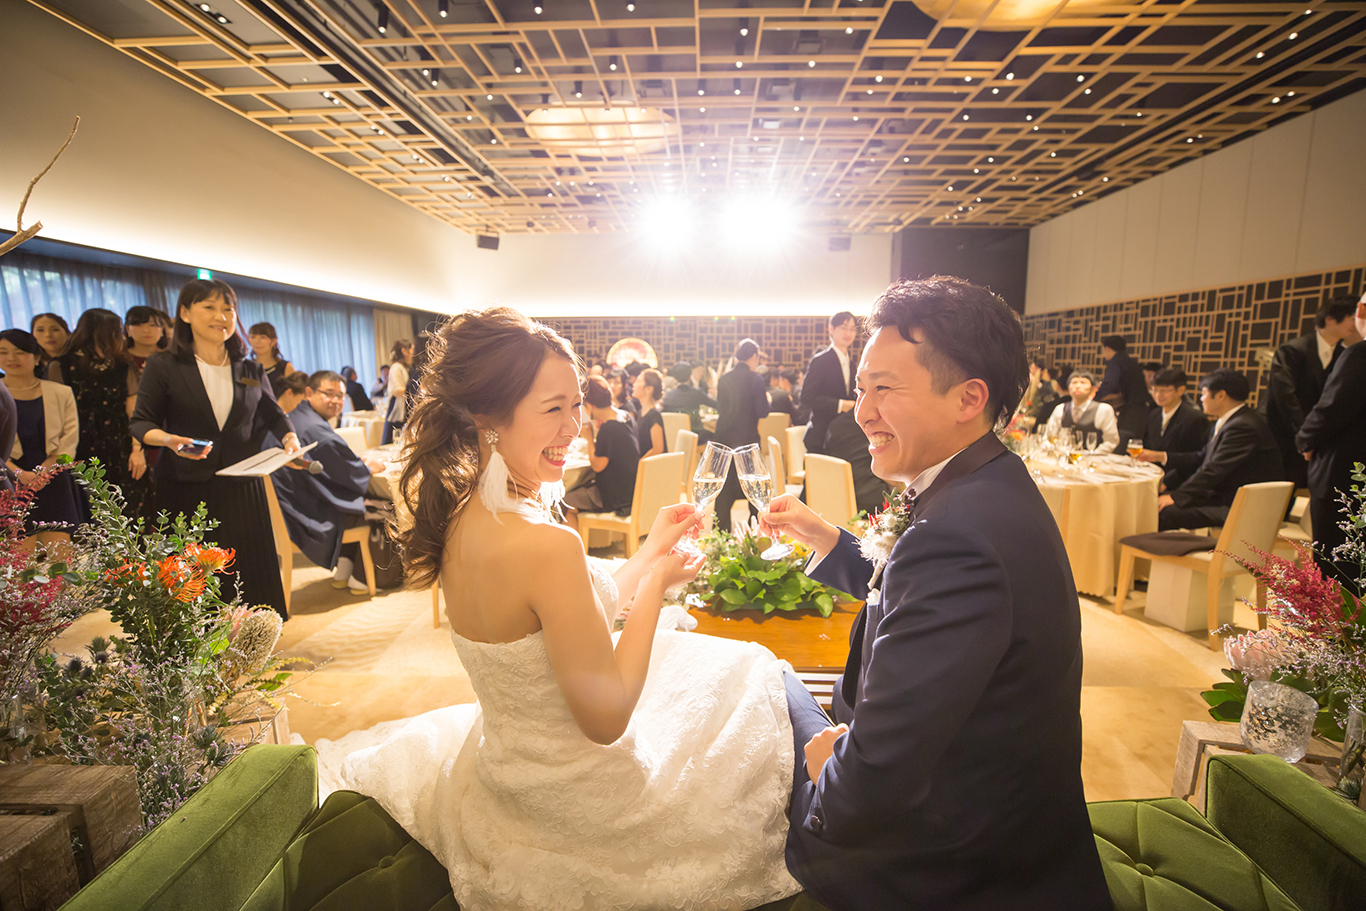 結婚式のシーン別おすすめbgmー前編ー 入場 乾杯 ケーキ入刀 中座 News 結婚式場を東京でお探しなら 八芳園